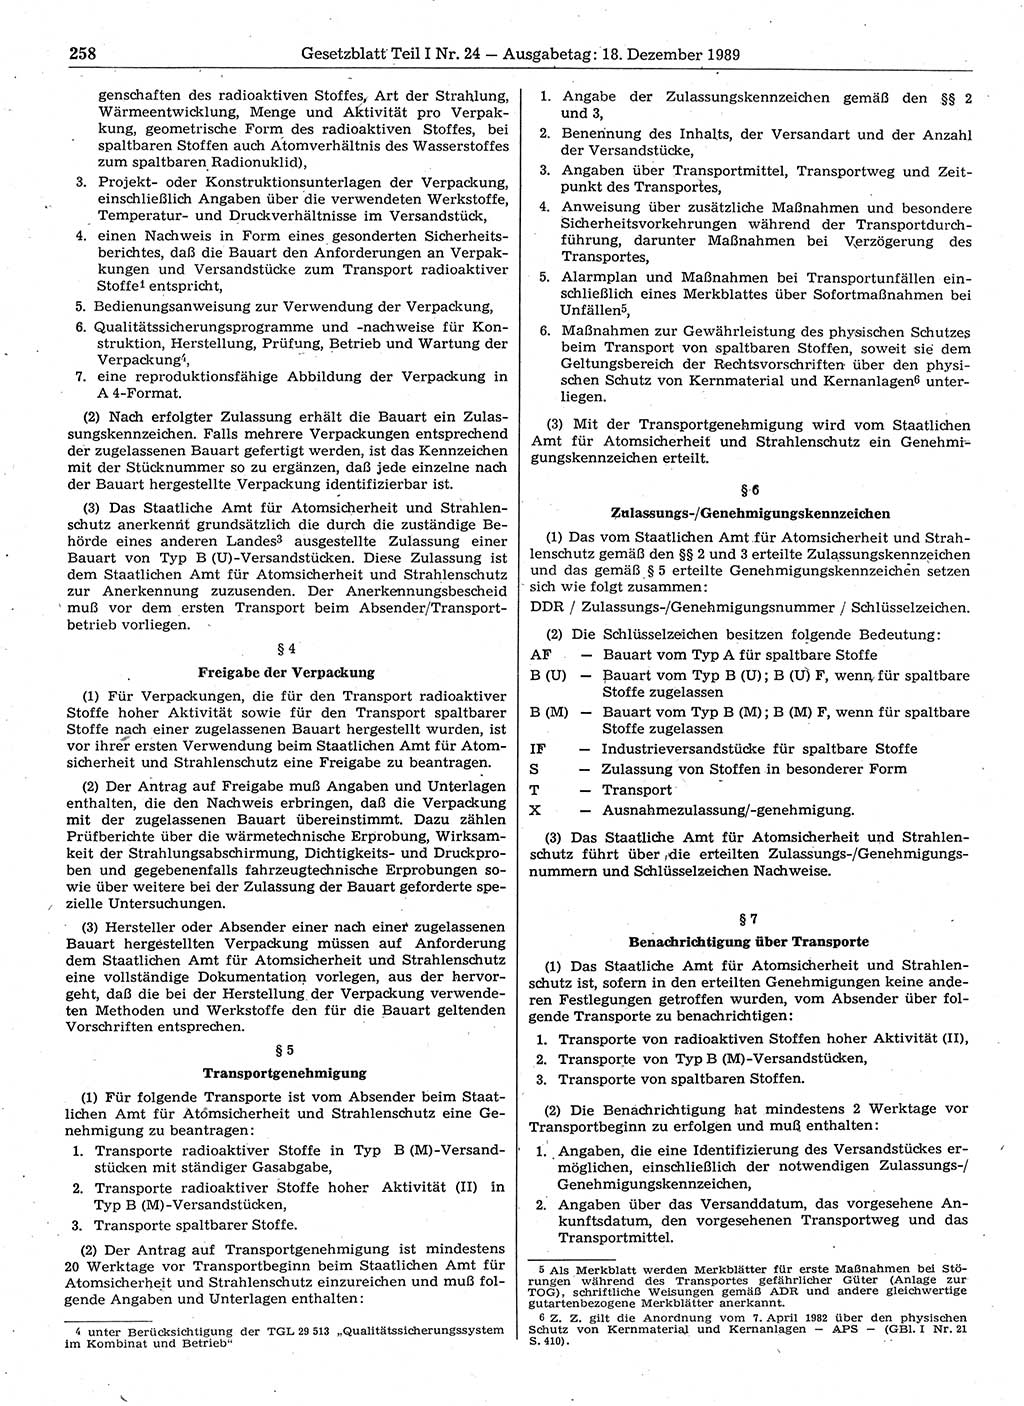 Gesetzblatt (GBl.) der Deutschen Demokratischen Republik (DDR) Teil Ⅰ 1989, Seite 258 (GBl. DDR Ⅰ 1989, S. 258)